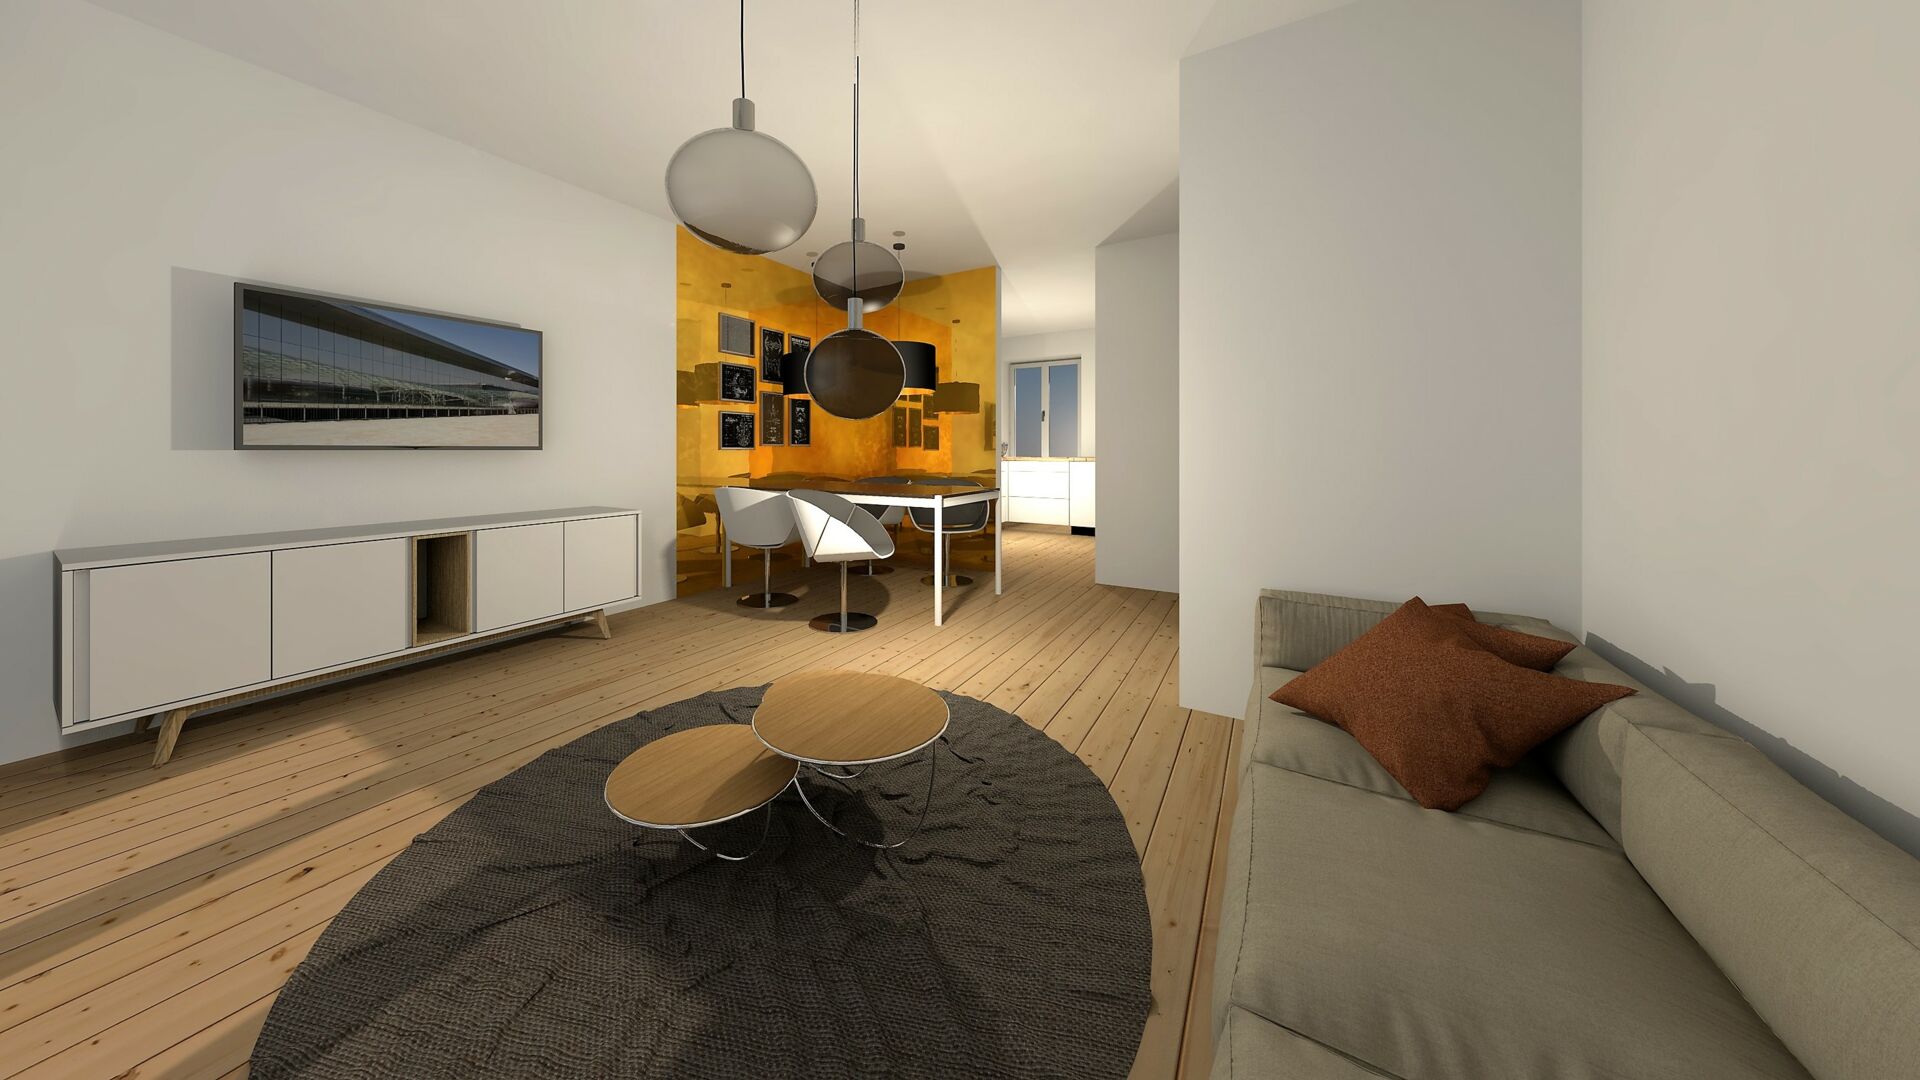 Sanierung Mehrfamilienhaus in Penig - Wohnraum 3D Planung - Bild 3